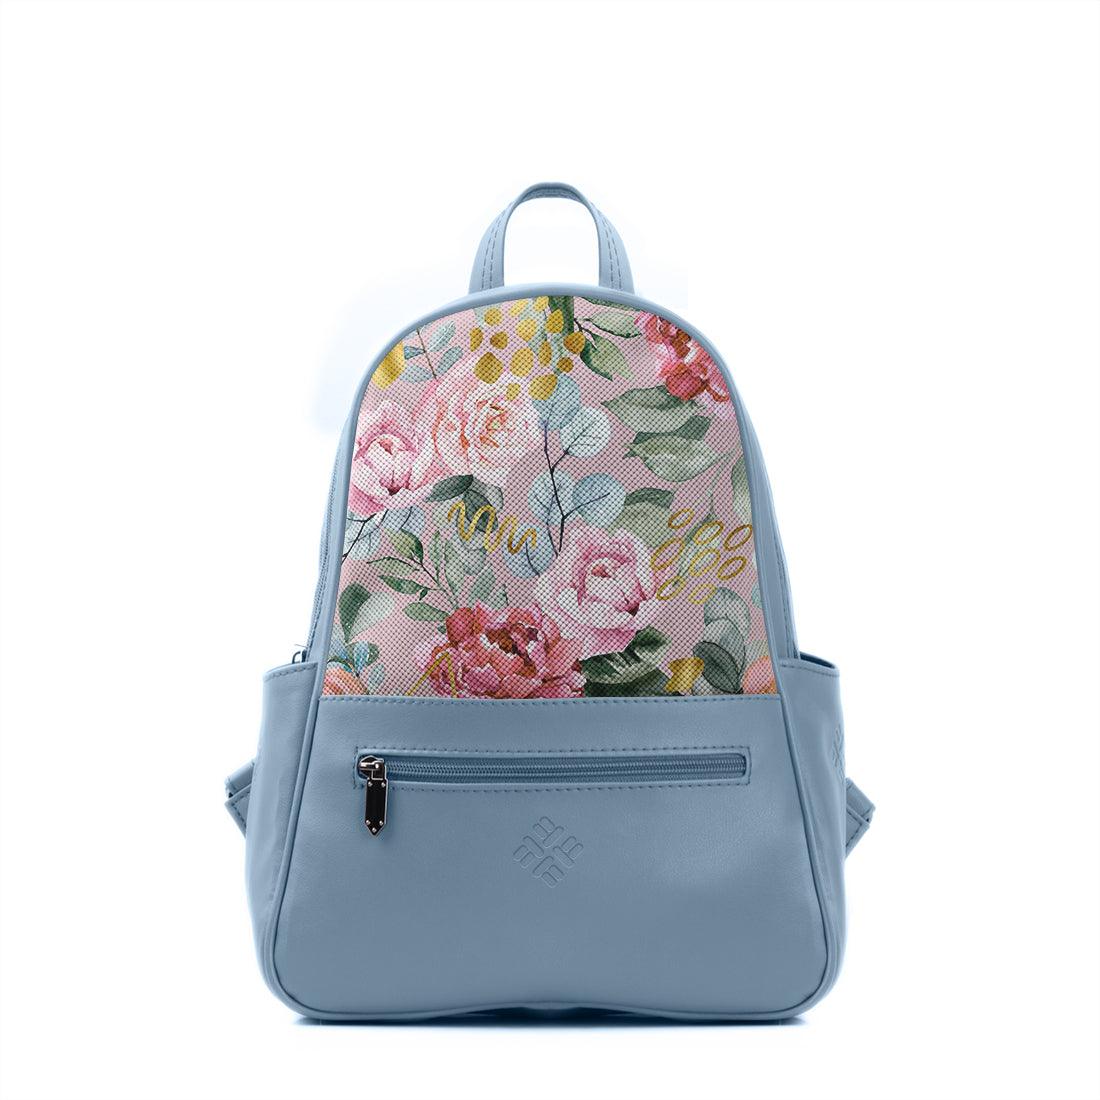 Blue Vivid Backpack Watercolor gentle